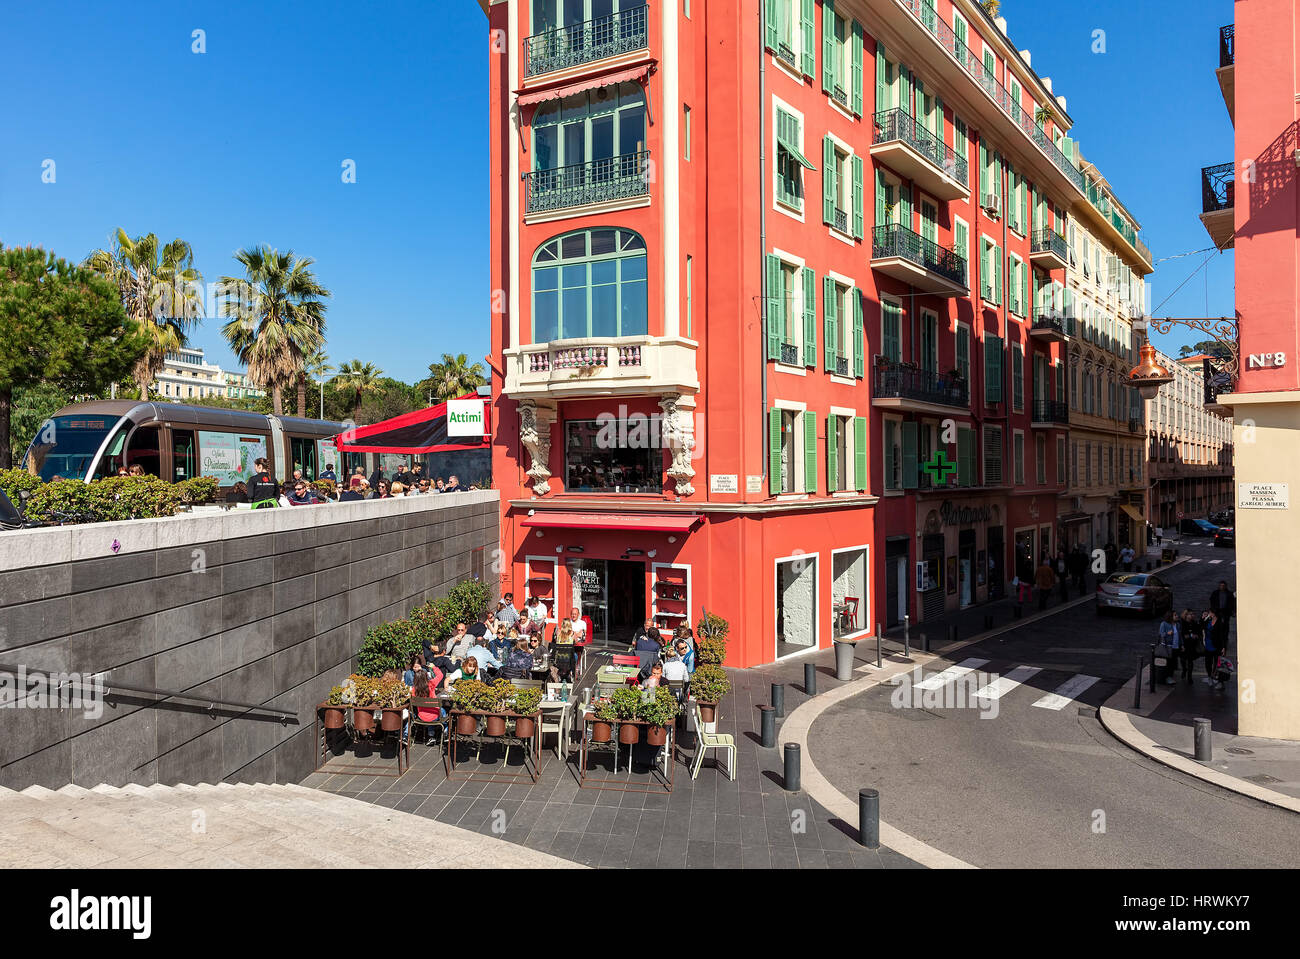 Nizza, Frankreich - 26. März 2016: Ungewöhnliche rote Gebäude und Außenrestaurant am Place Massena in Nizza - fünftgrößte, zweitgrößte Stadt Frankreichs Stockfoto